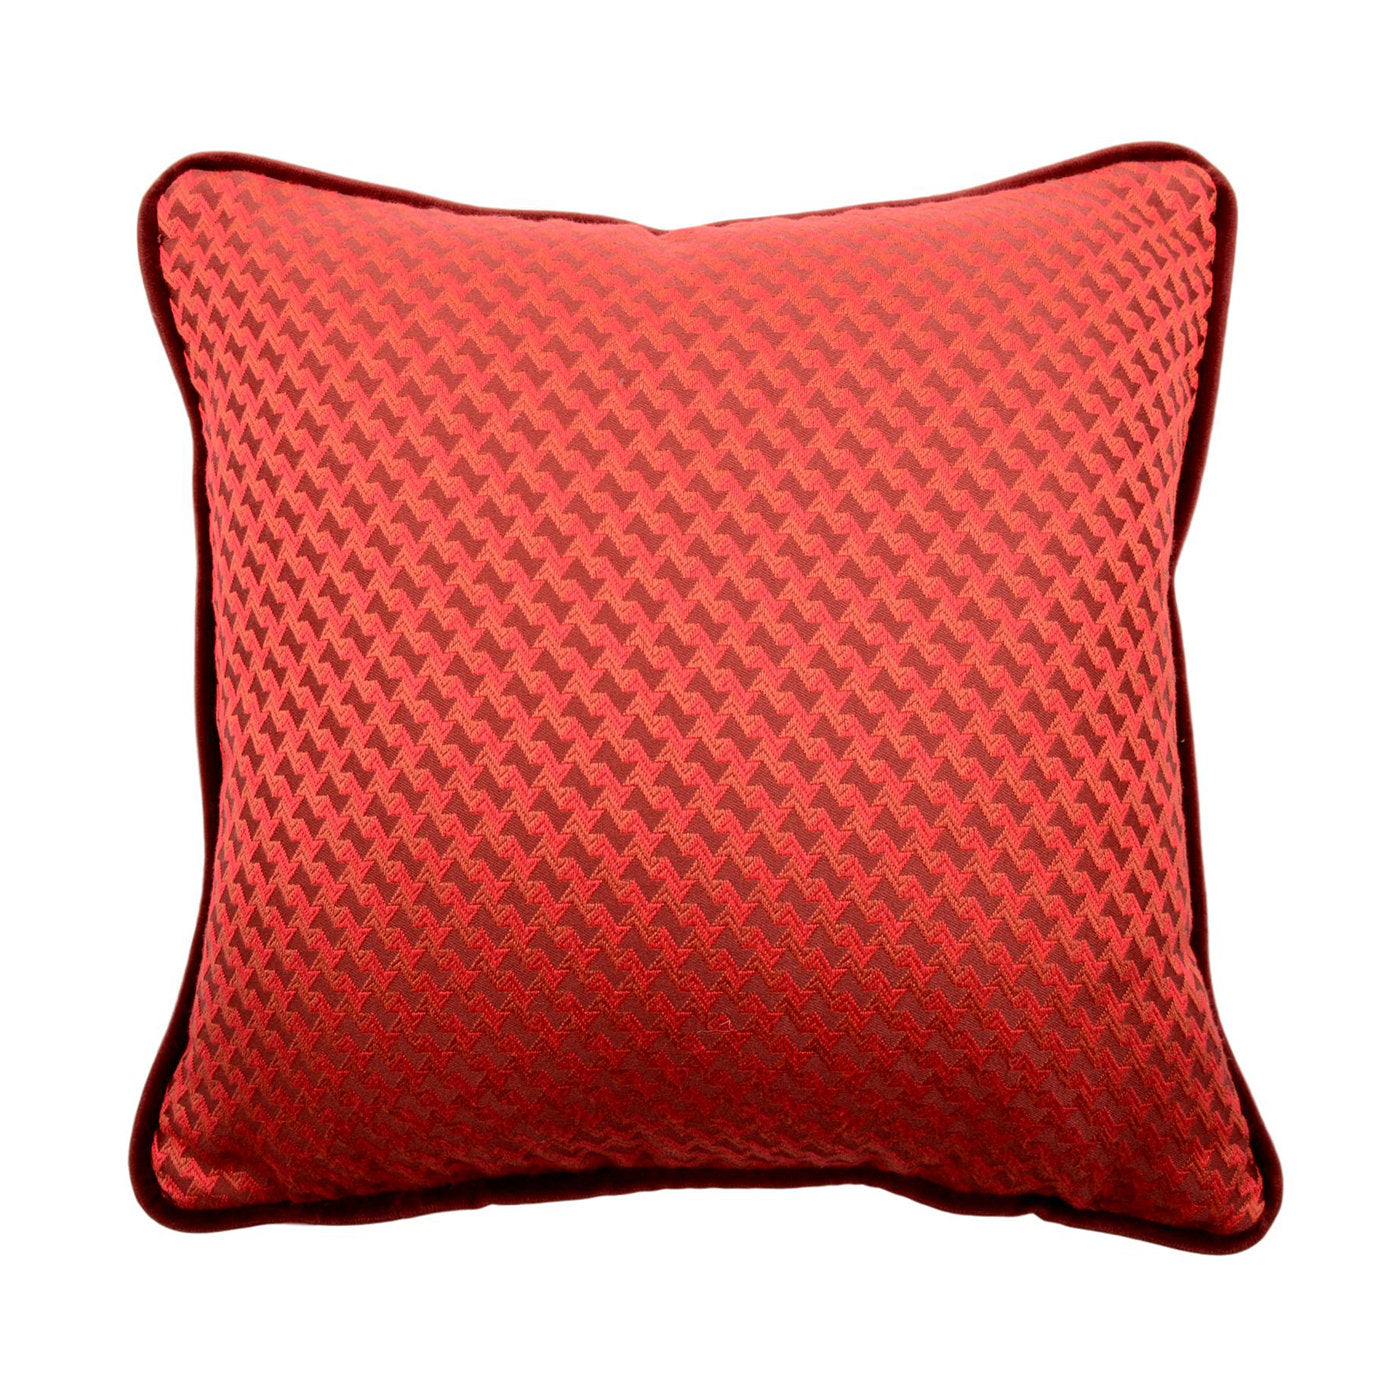 Cuscino Carrè rosso in tessuto jacquard microfantasia - Vista principale